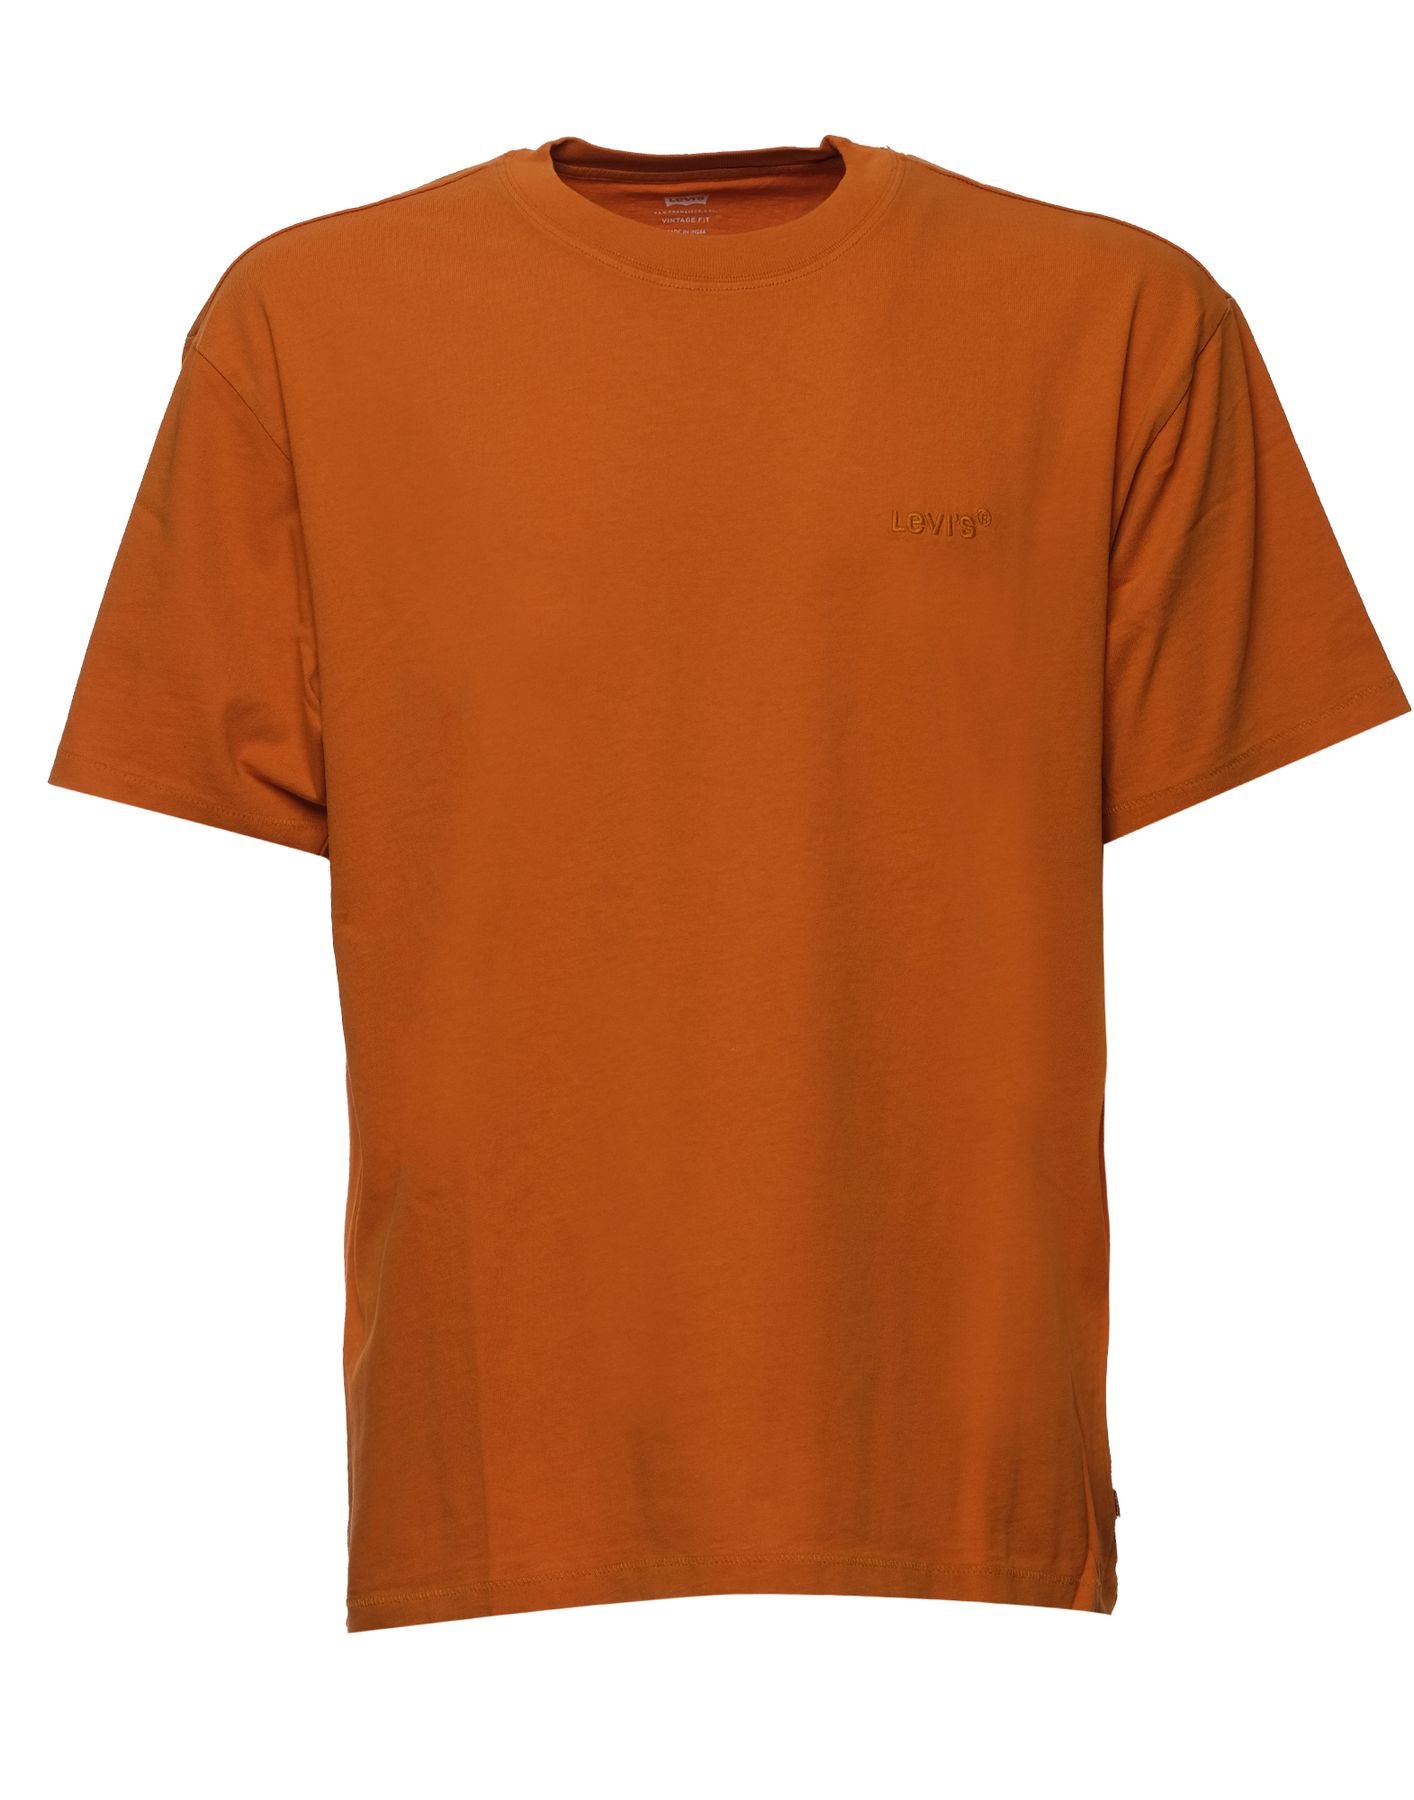 T-shirt pour homme A0637 0070 DESERT SUN Levi's